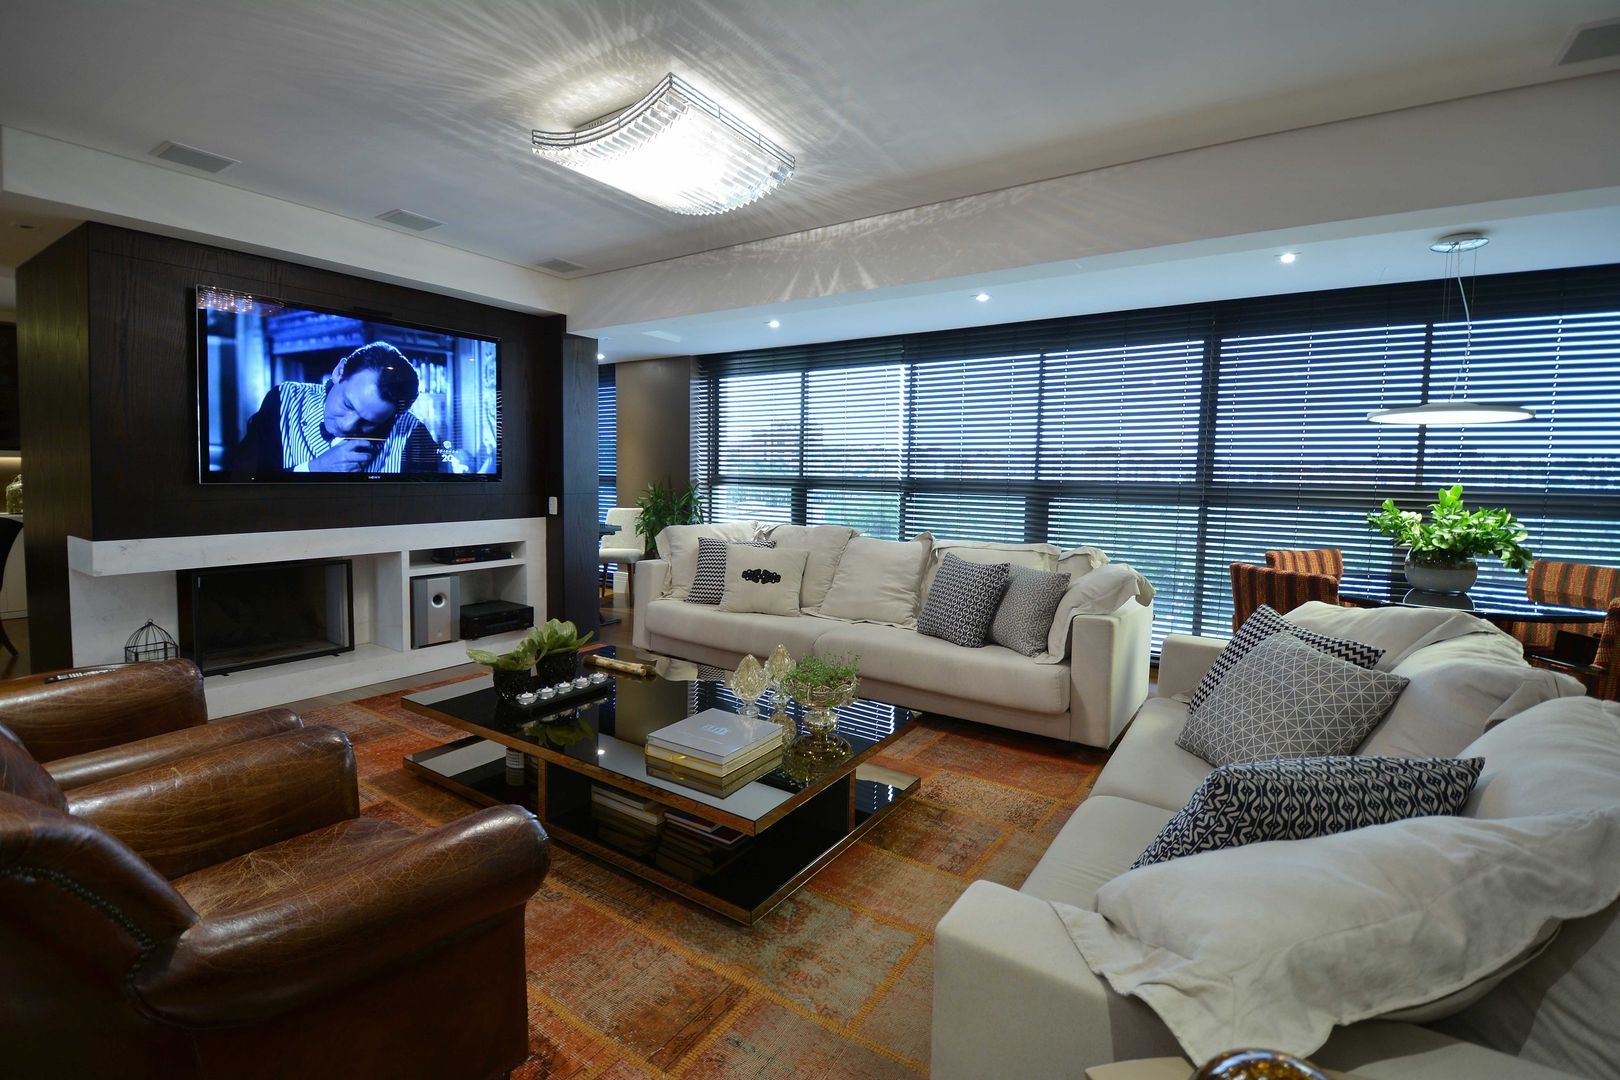 Morar e receber bem, Marcelo Minuscoli - Projetos Personalizados Marcelo Minuscoli - Projetos Personalizados Modern living room